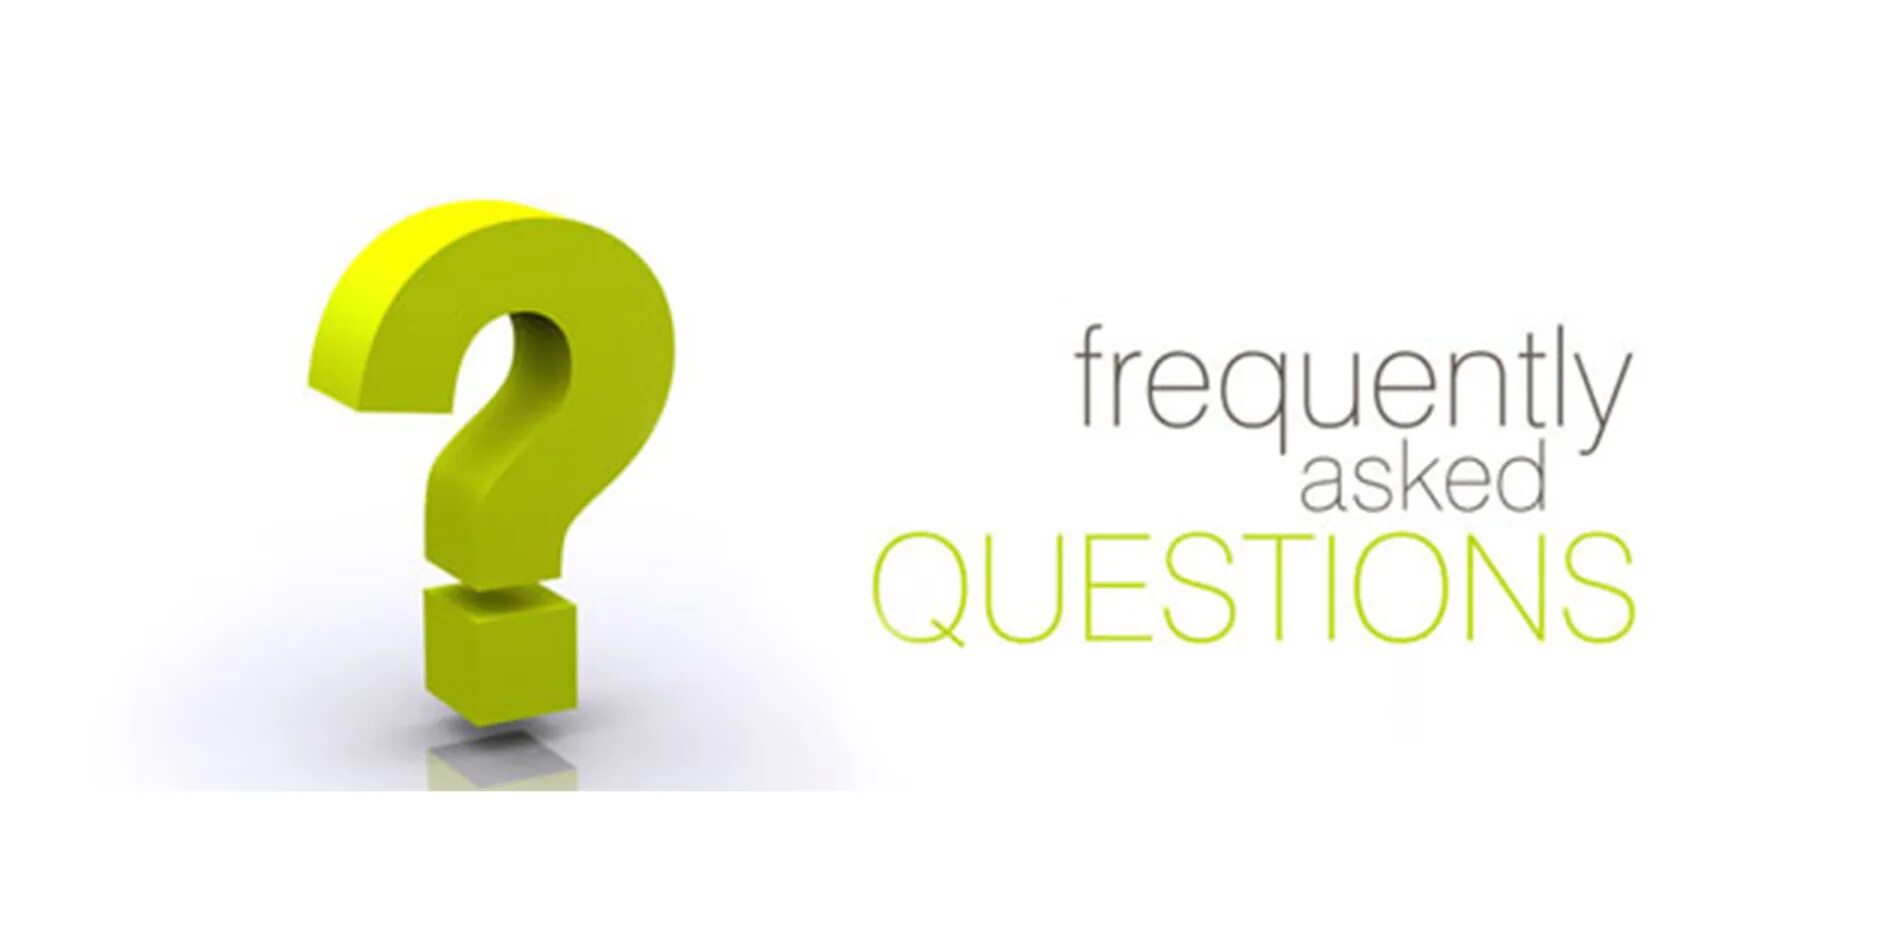 Оо 1 вопросы ответы. Ответы на часто задаваемые вопросы. Частые вопросы. Вопрос-ответ. Рубрика частые вопросы.